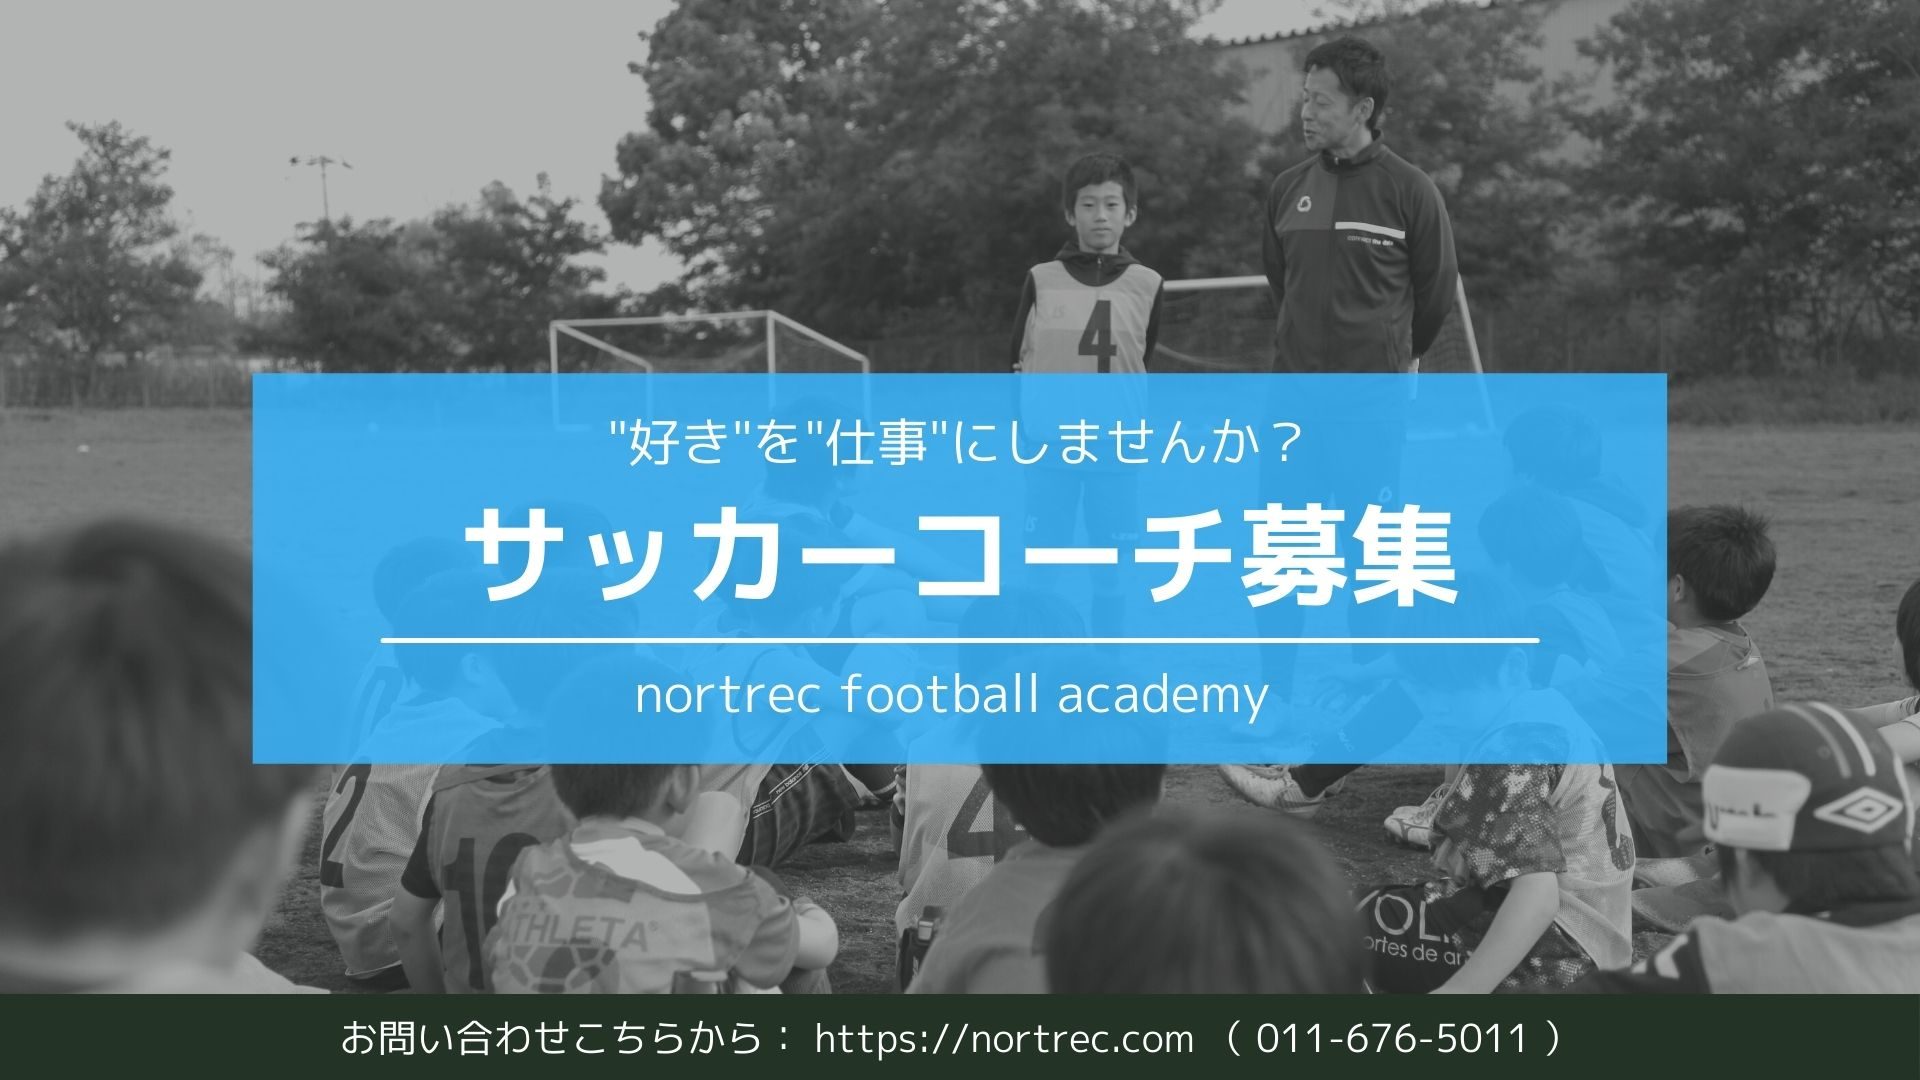 スタッフ募集 ノートレックフットボールアカデミーでは新たにスタッフを募集しています アルバイト 社員 ノートレックフットボールアカデミー